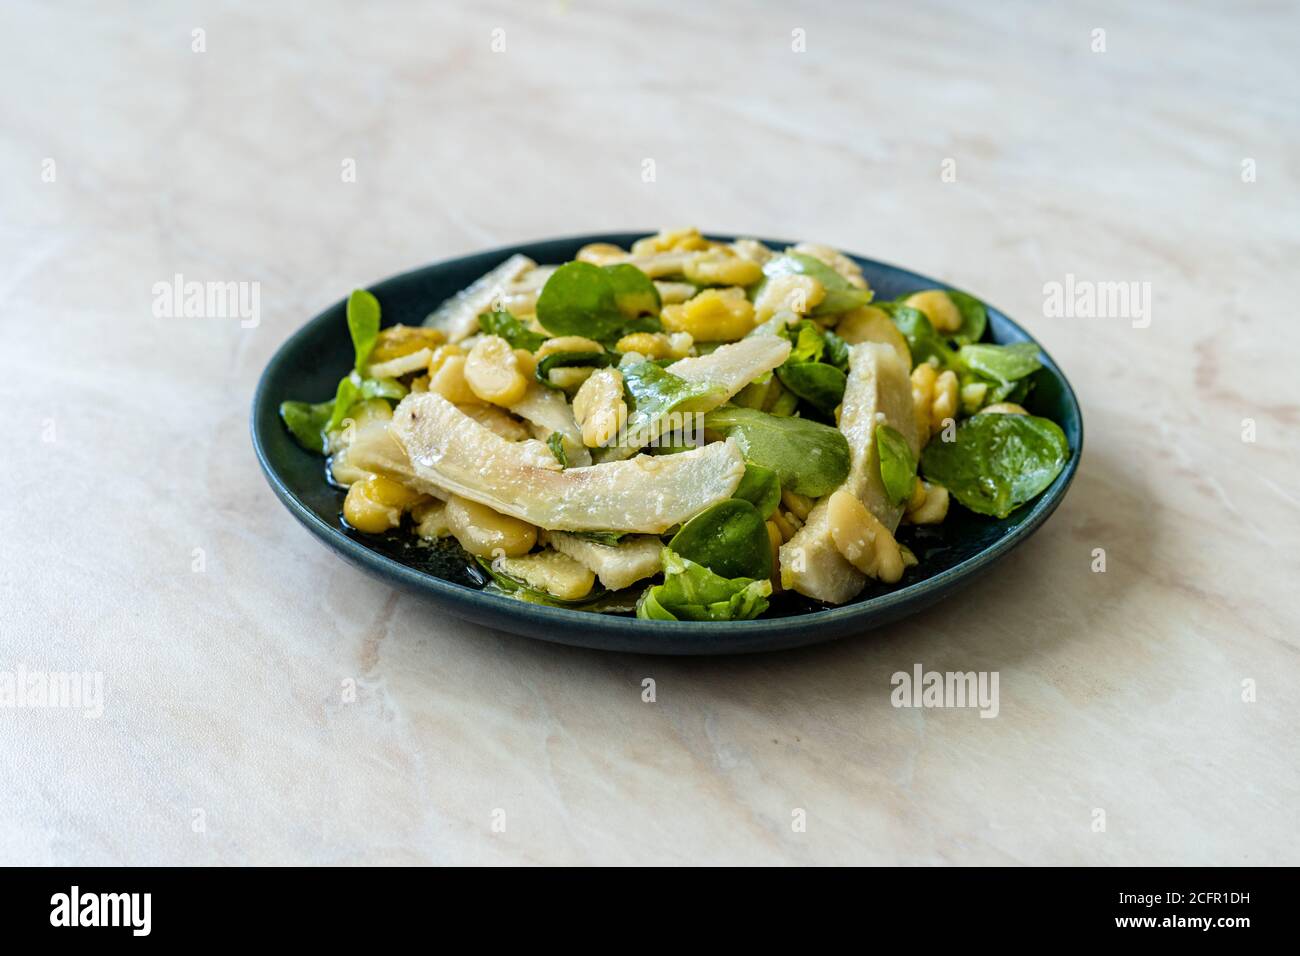 Carciofo a fette con fagioli, insalata di purslane, parmigiano grattugiato e olio d'oliva. Cibo biologico sano stile tradizionale. Foto Stock